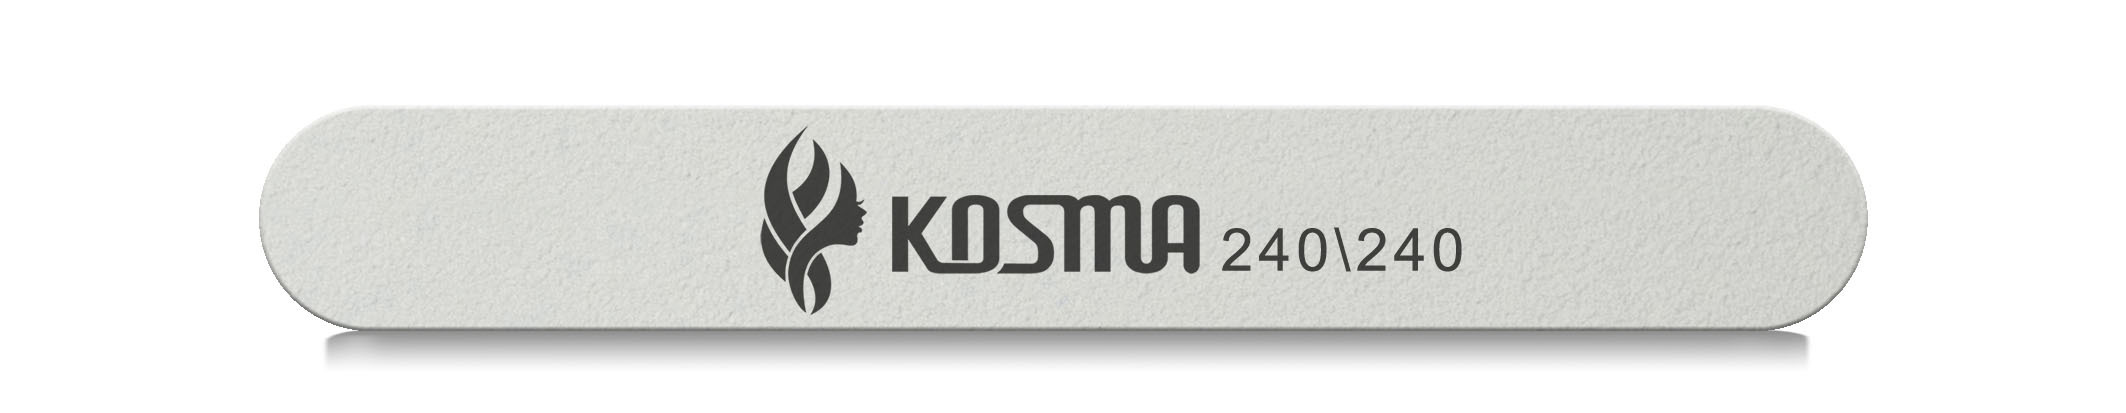 Купить Пилка KOSMA прямая маленькая белая 240/240 пластиковая основа 1 шт.